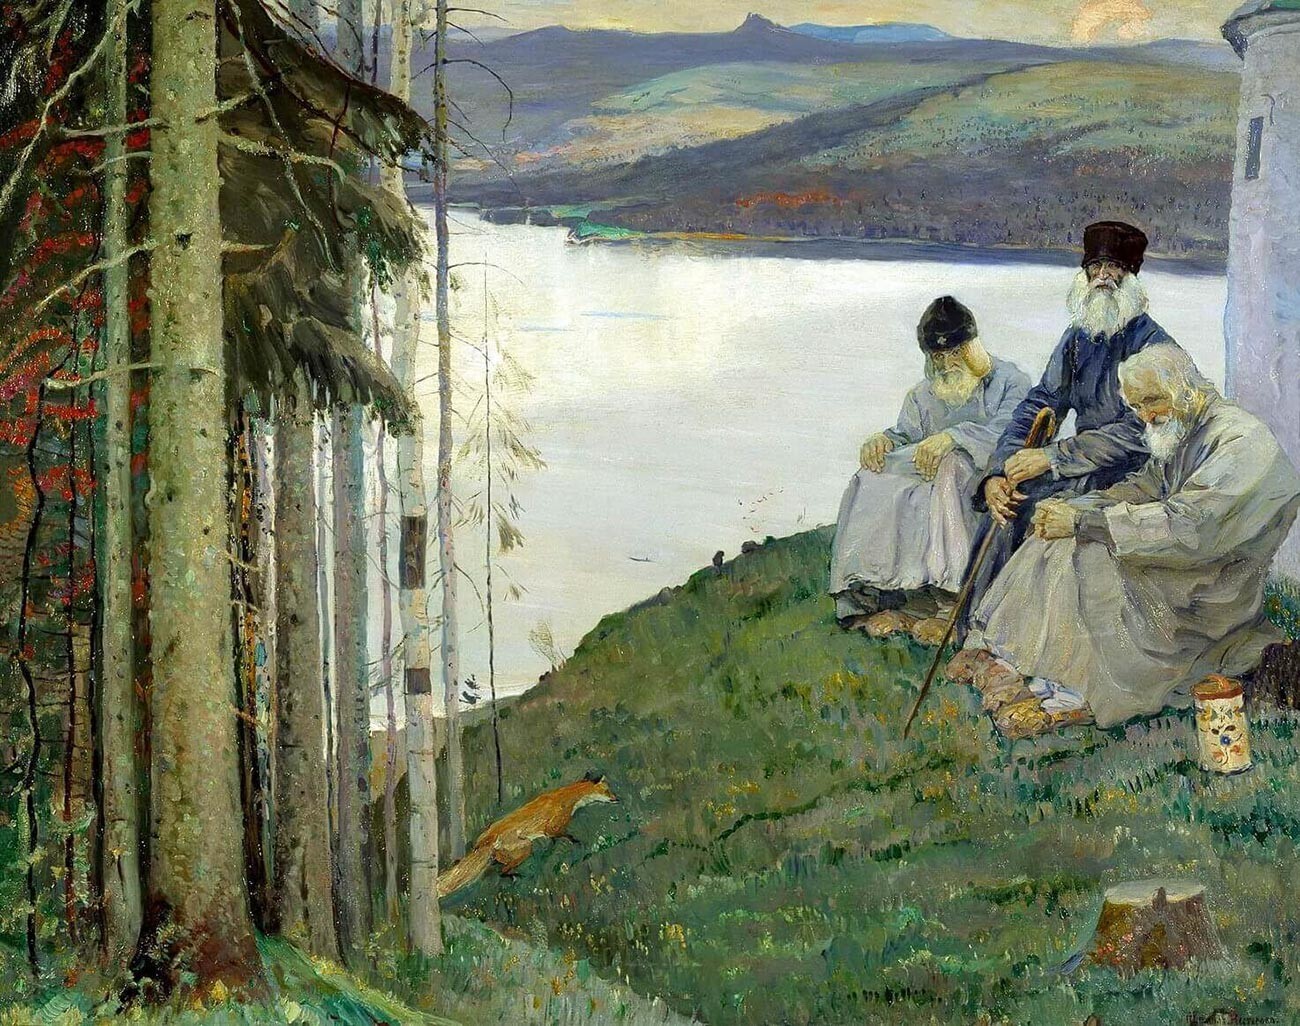 ミハイル・ネステロフ、『子ギツネ』、1914年